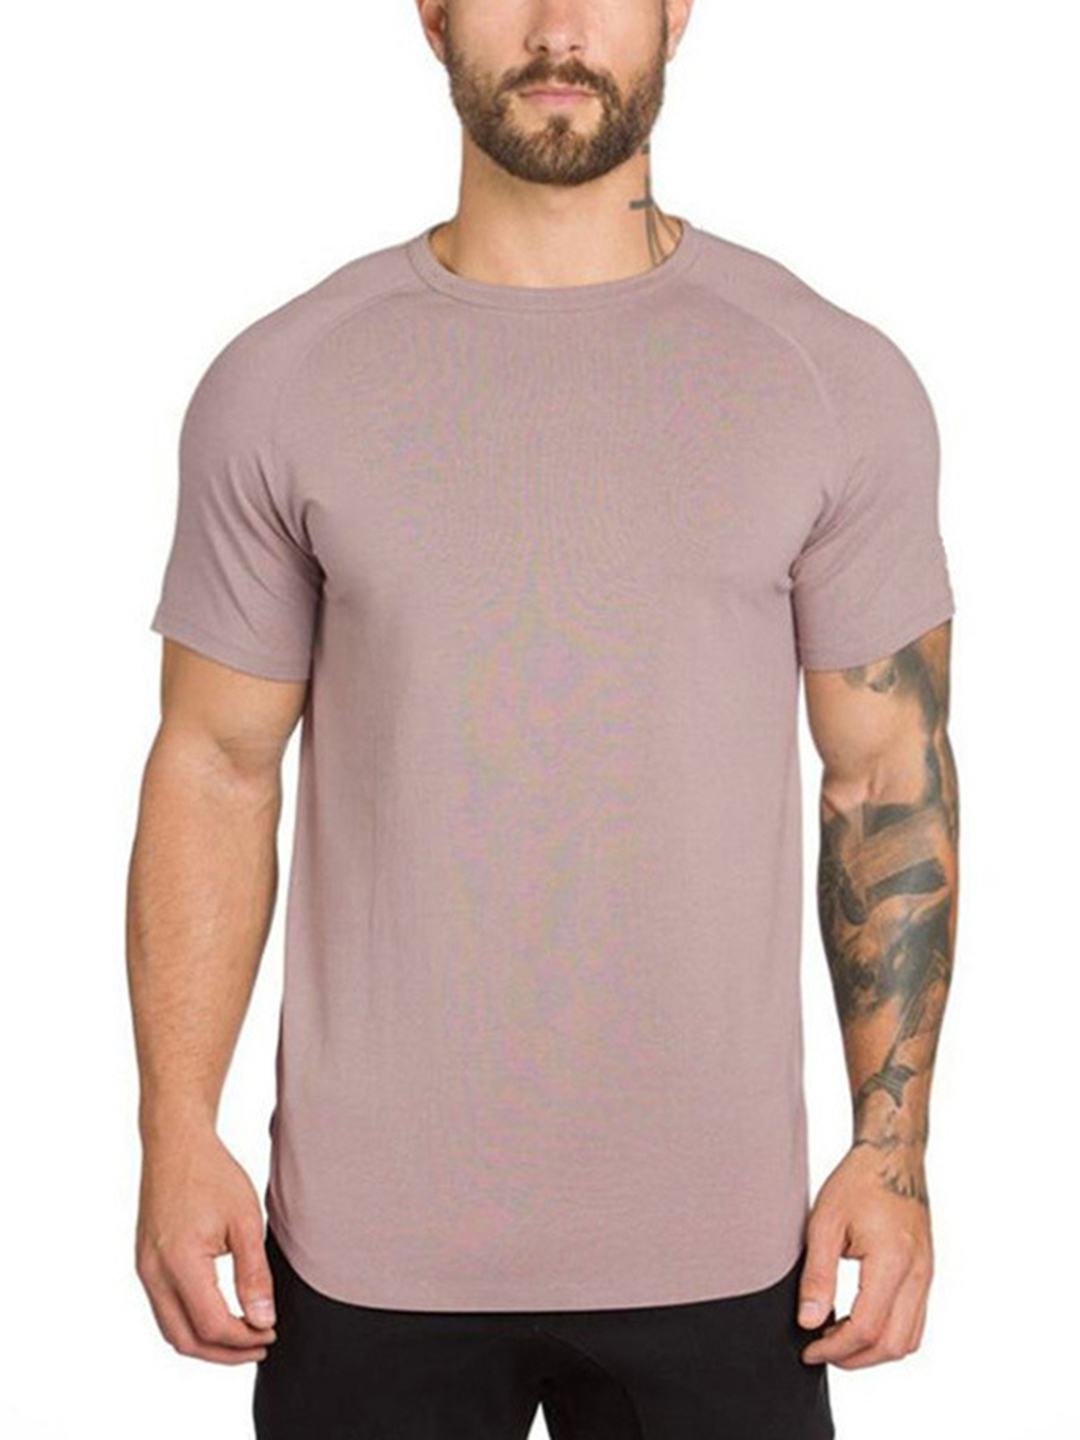 Men's Basic Plain Short Sleeve Sport T-Shirt